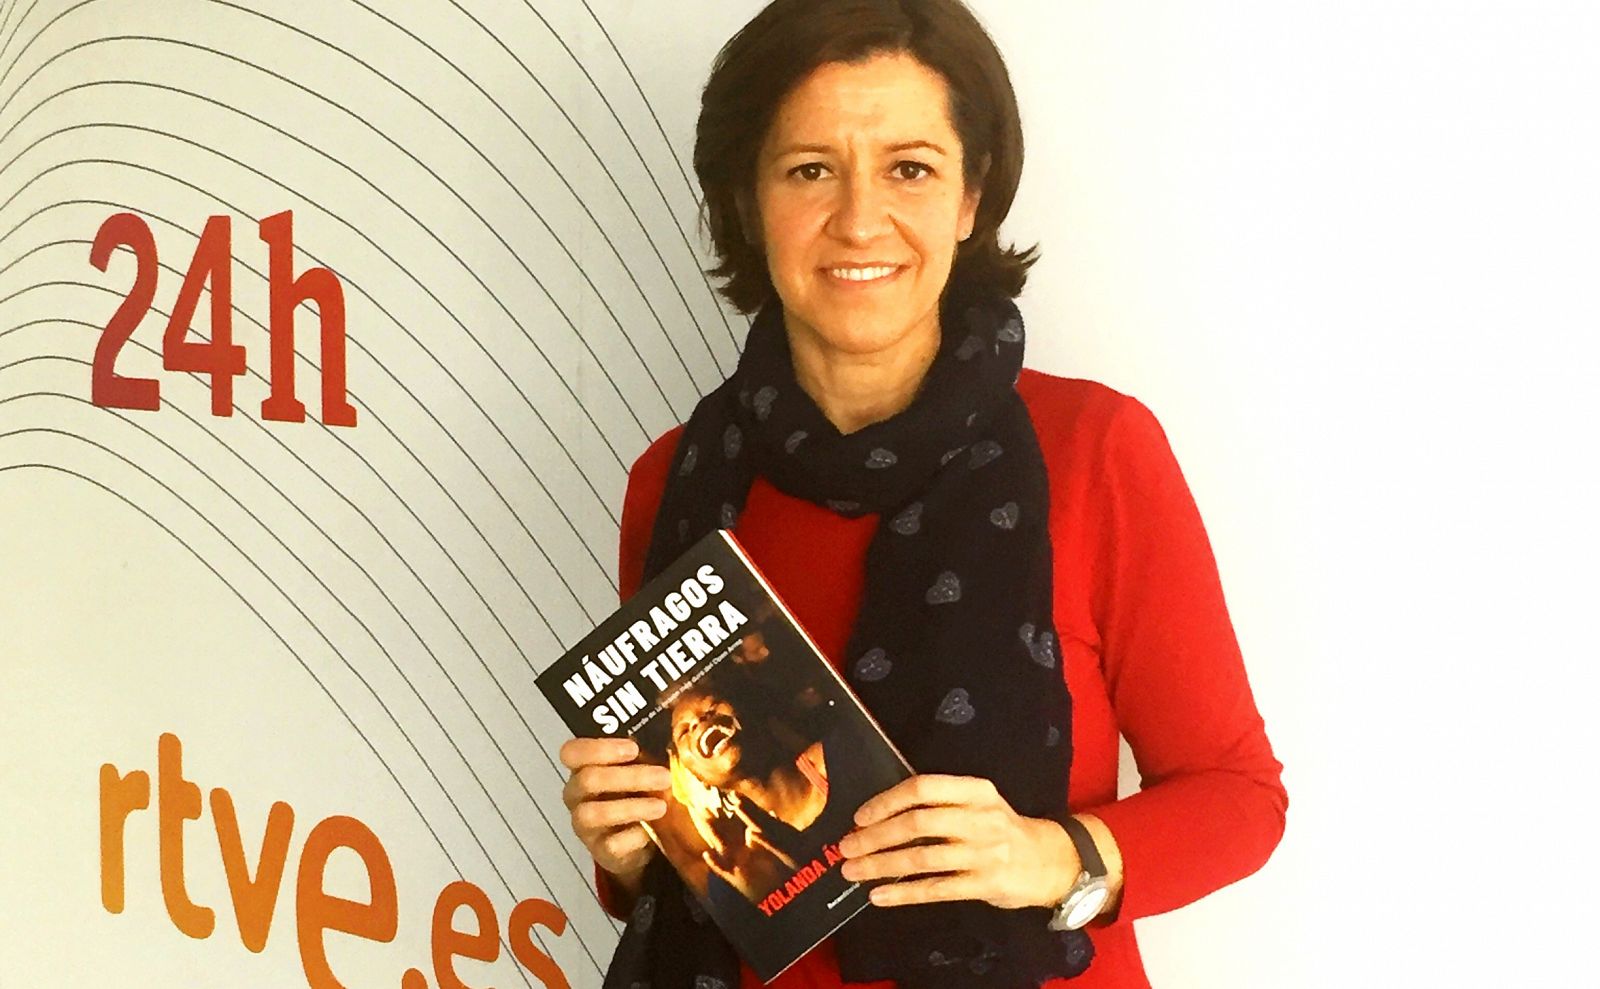 Yolanda Álvarez posa con su primer libro, Náufragos sin tierra, en las instalaciones de Torrespaña.